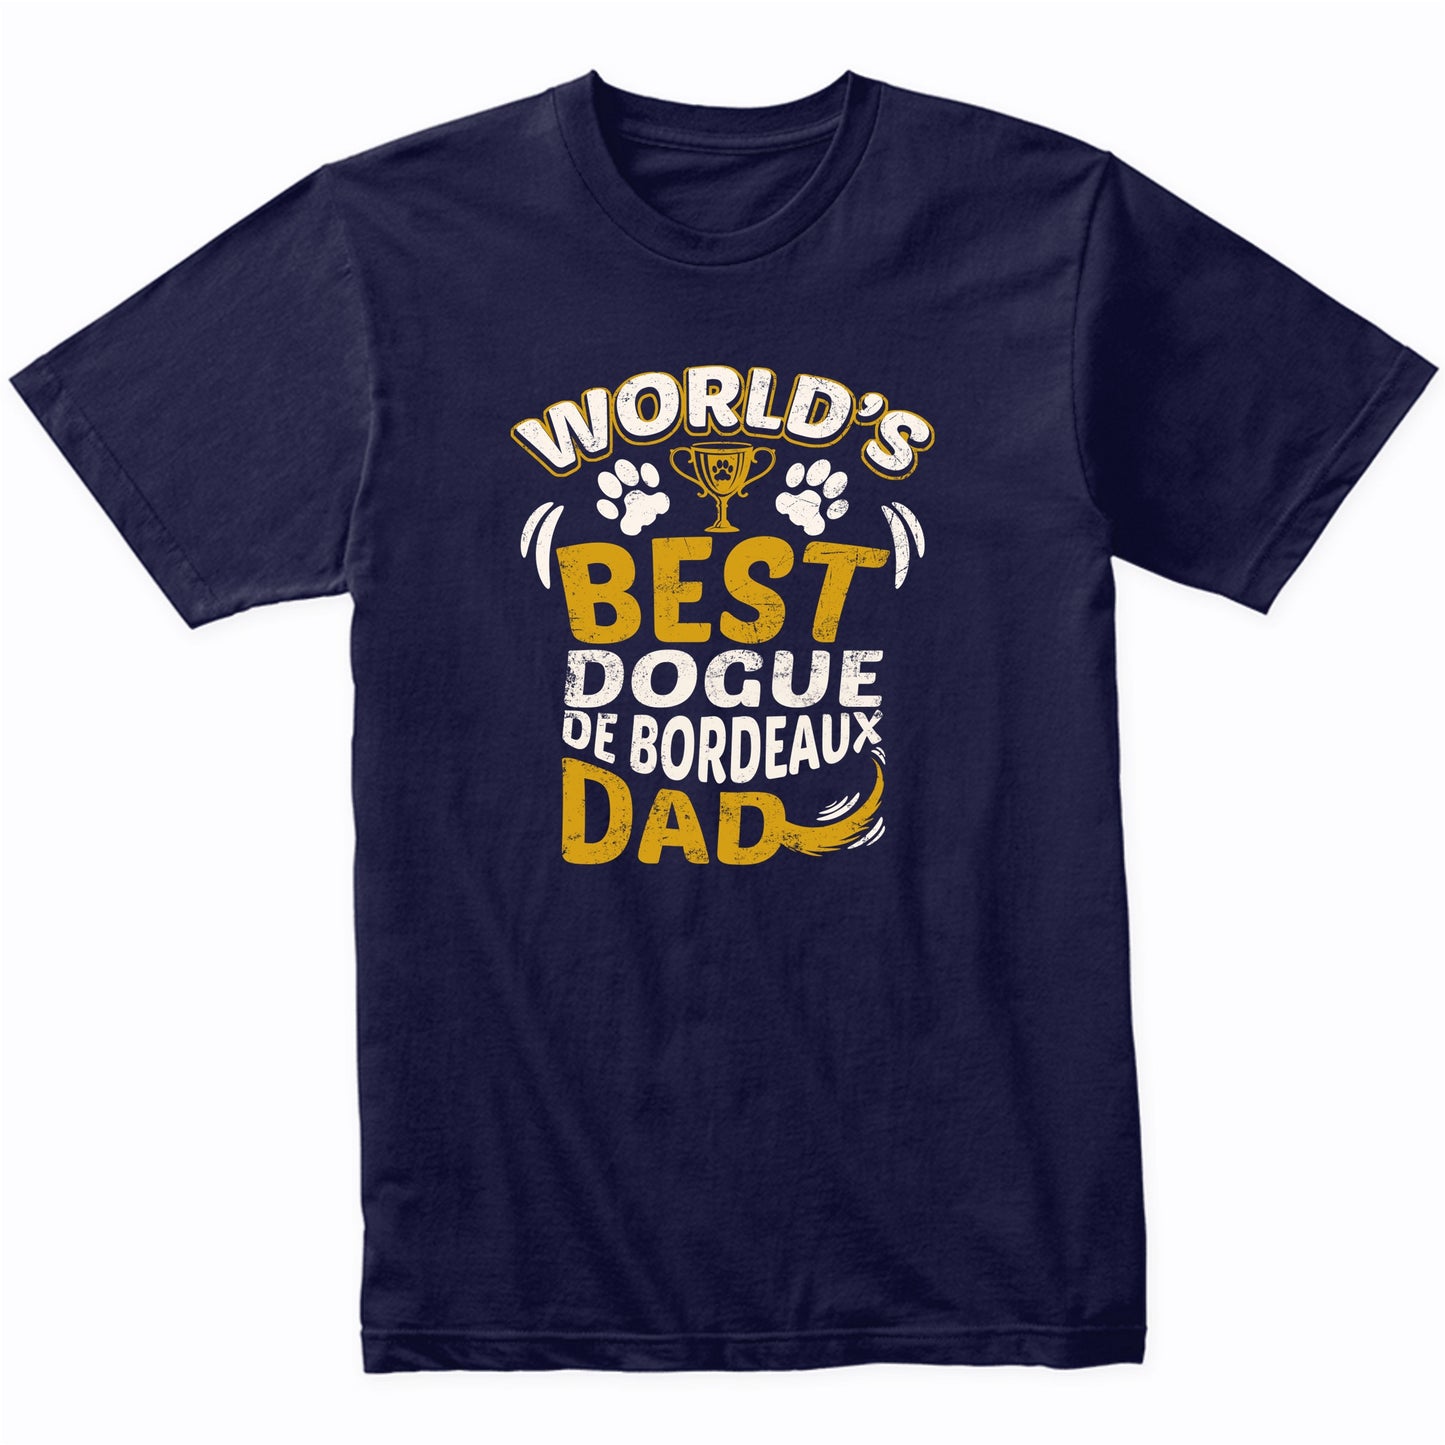 World's Best Dogue de Bordeaux Dad Graphic T-Shirt